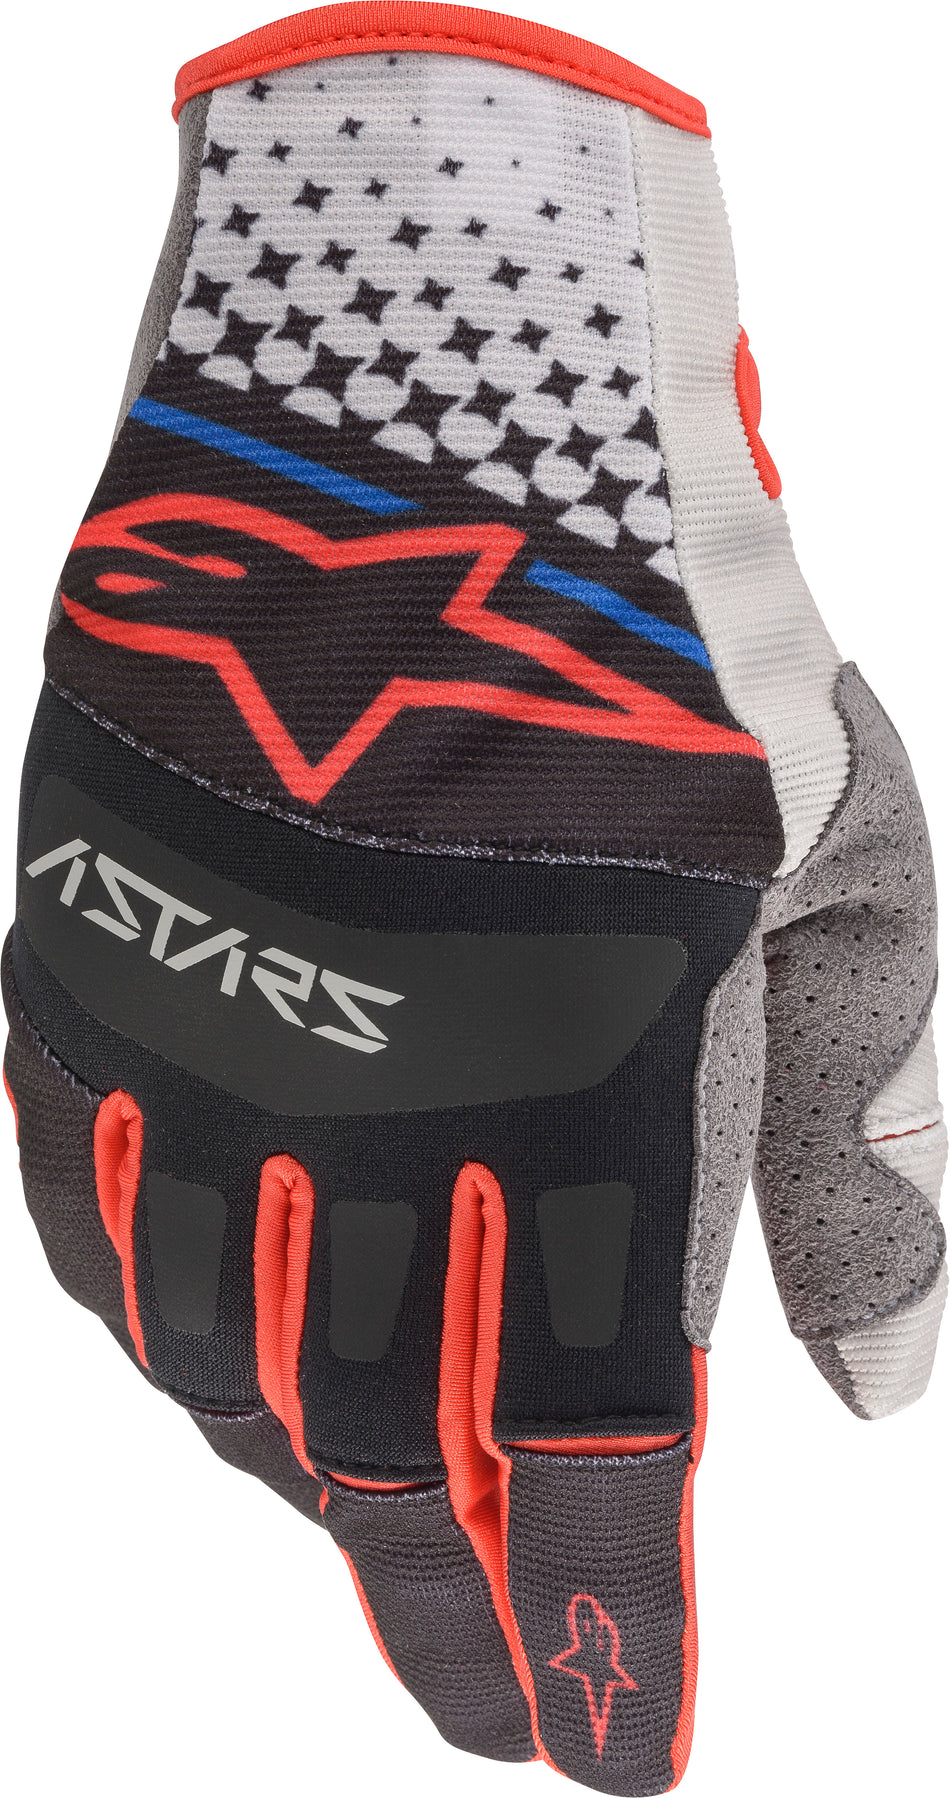 ALPINESTARS Techstar Gloves Grey/Black/Red Sm 3561020-9231-S